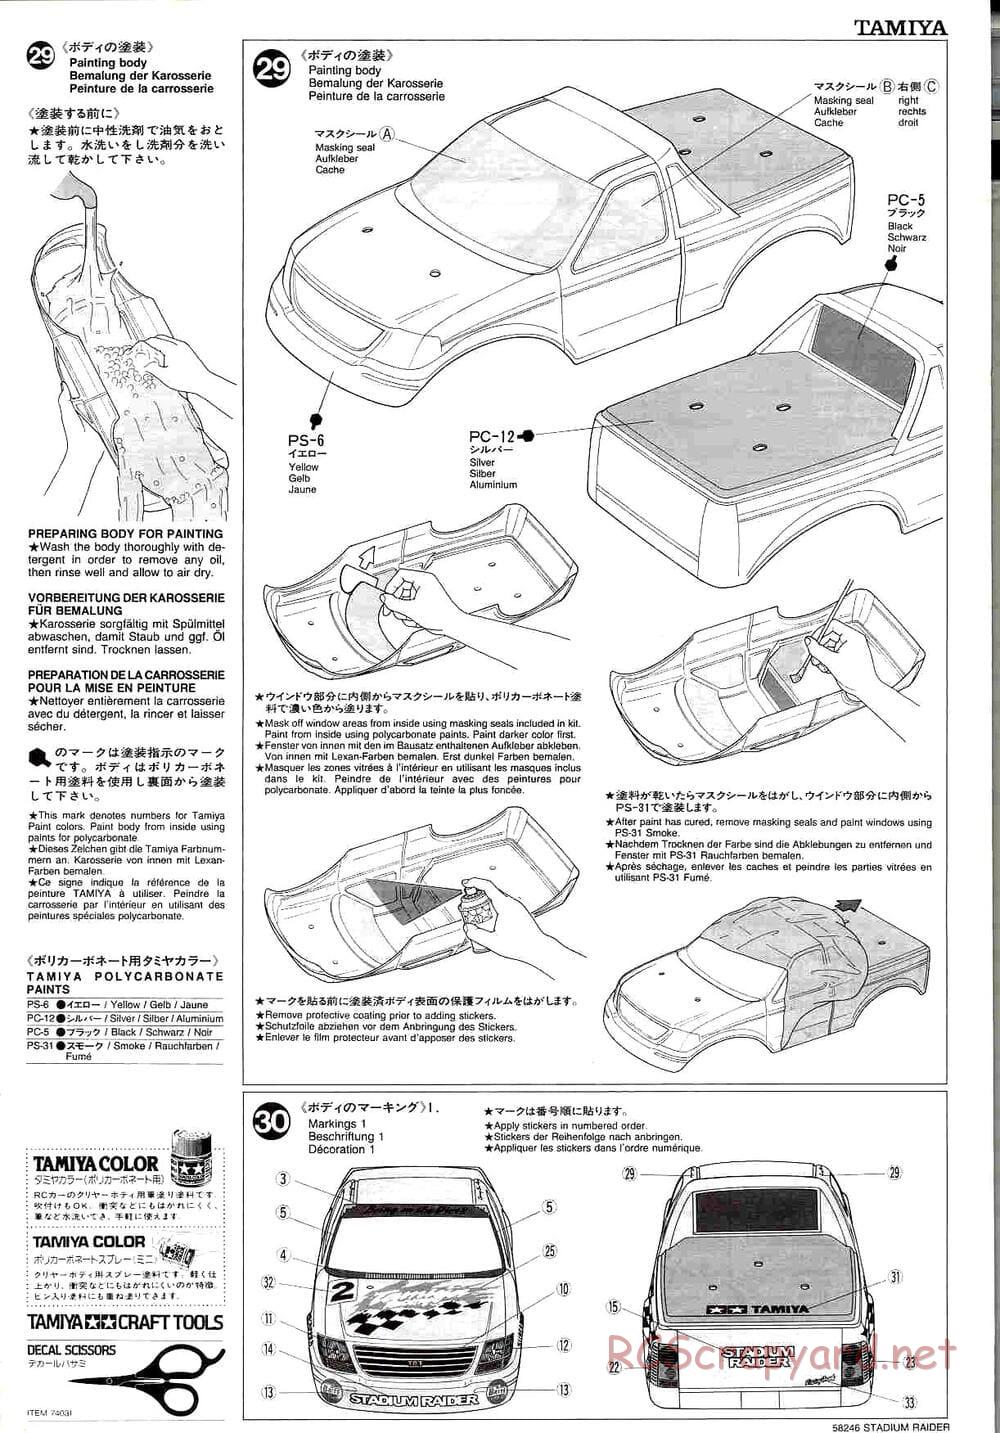 Tamiya - Stadium Raider - TL-01 Chassis - Manual - Page 17